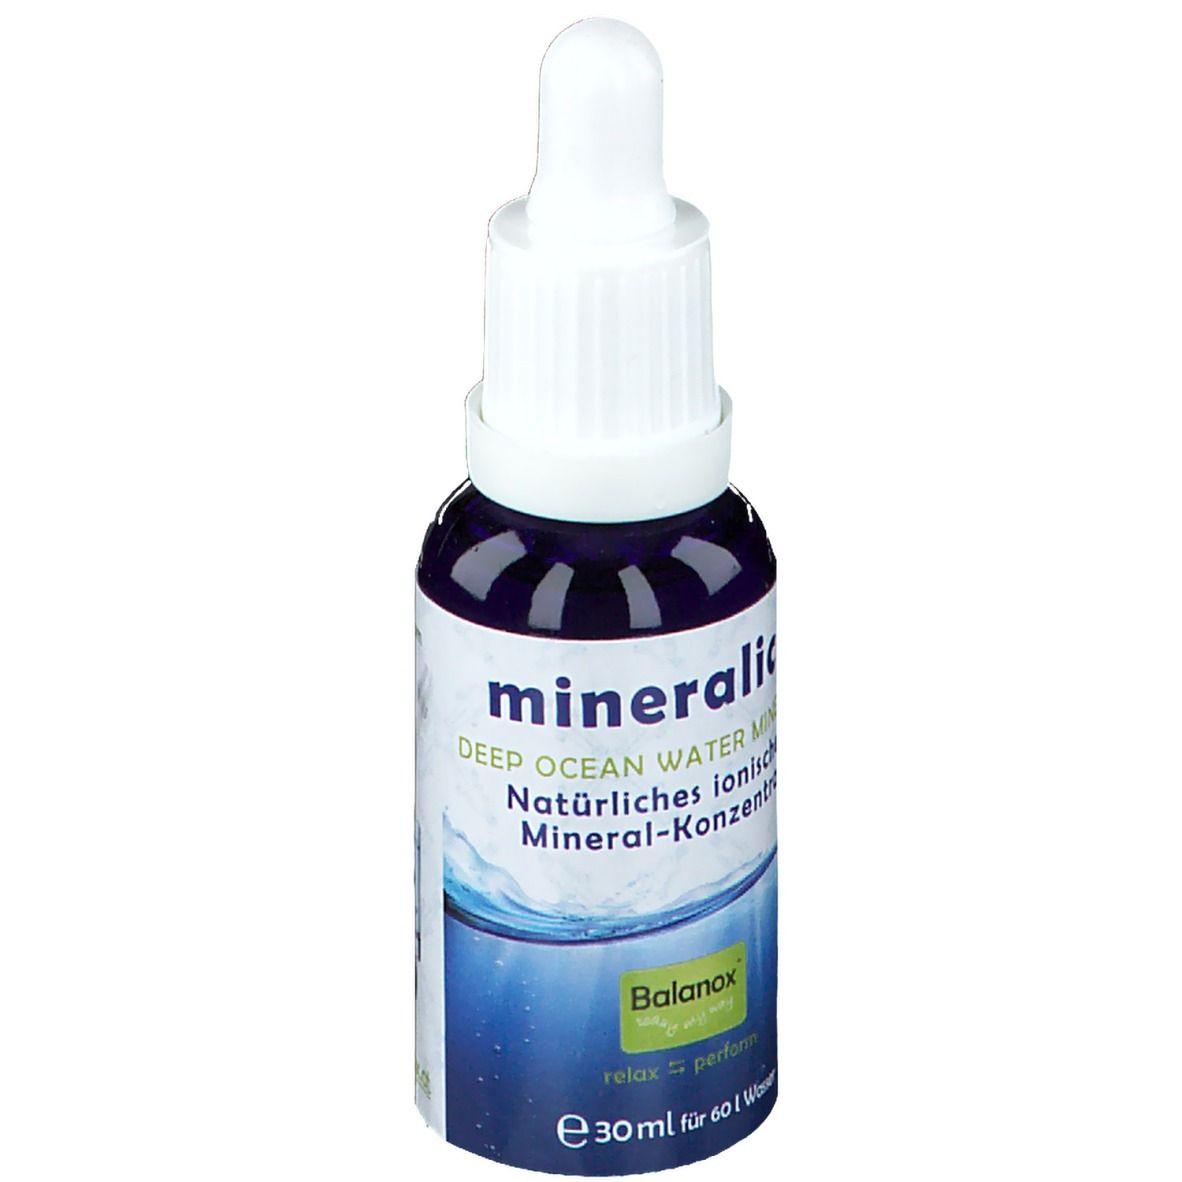 Balanox™ mineralic+ Natürliches ionisches Mineralstoff-Konzentrat